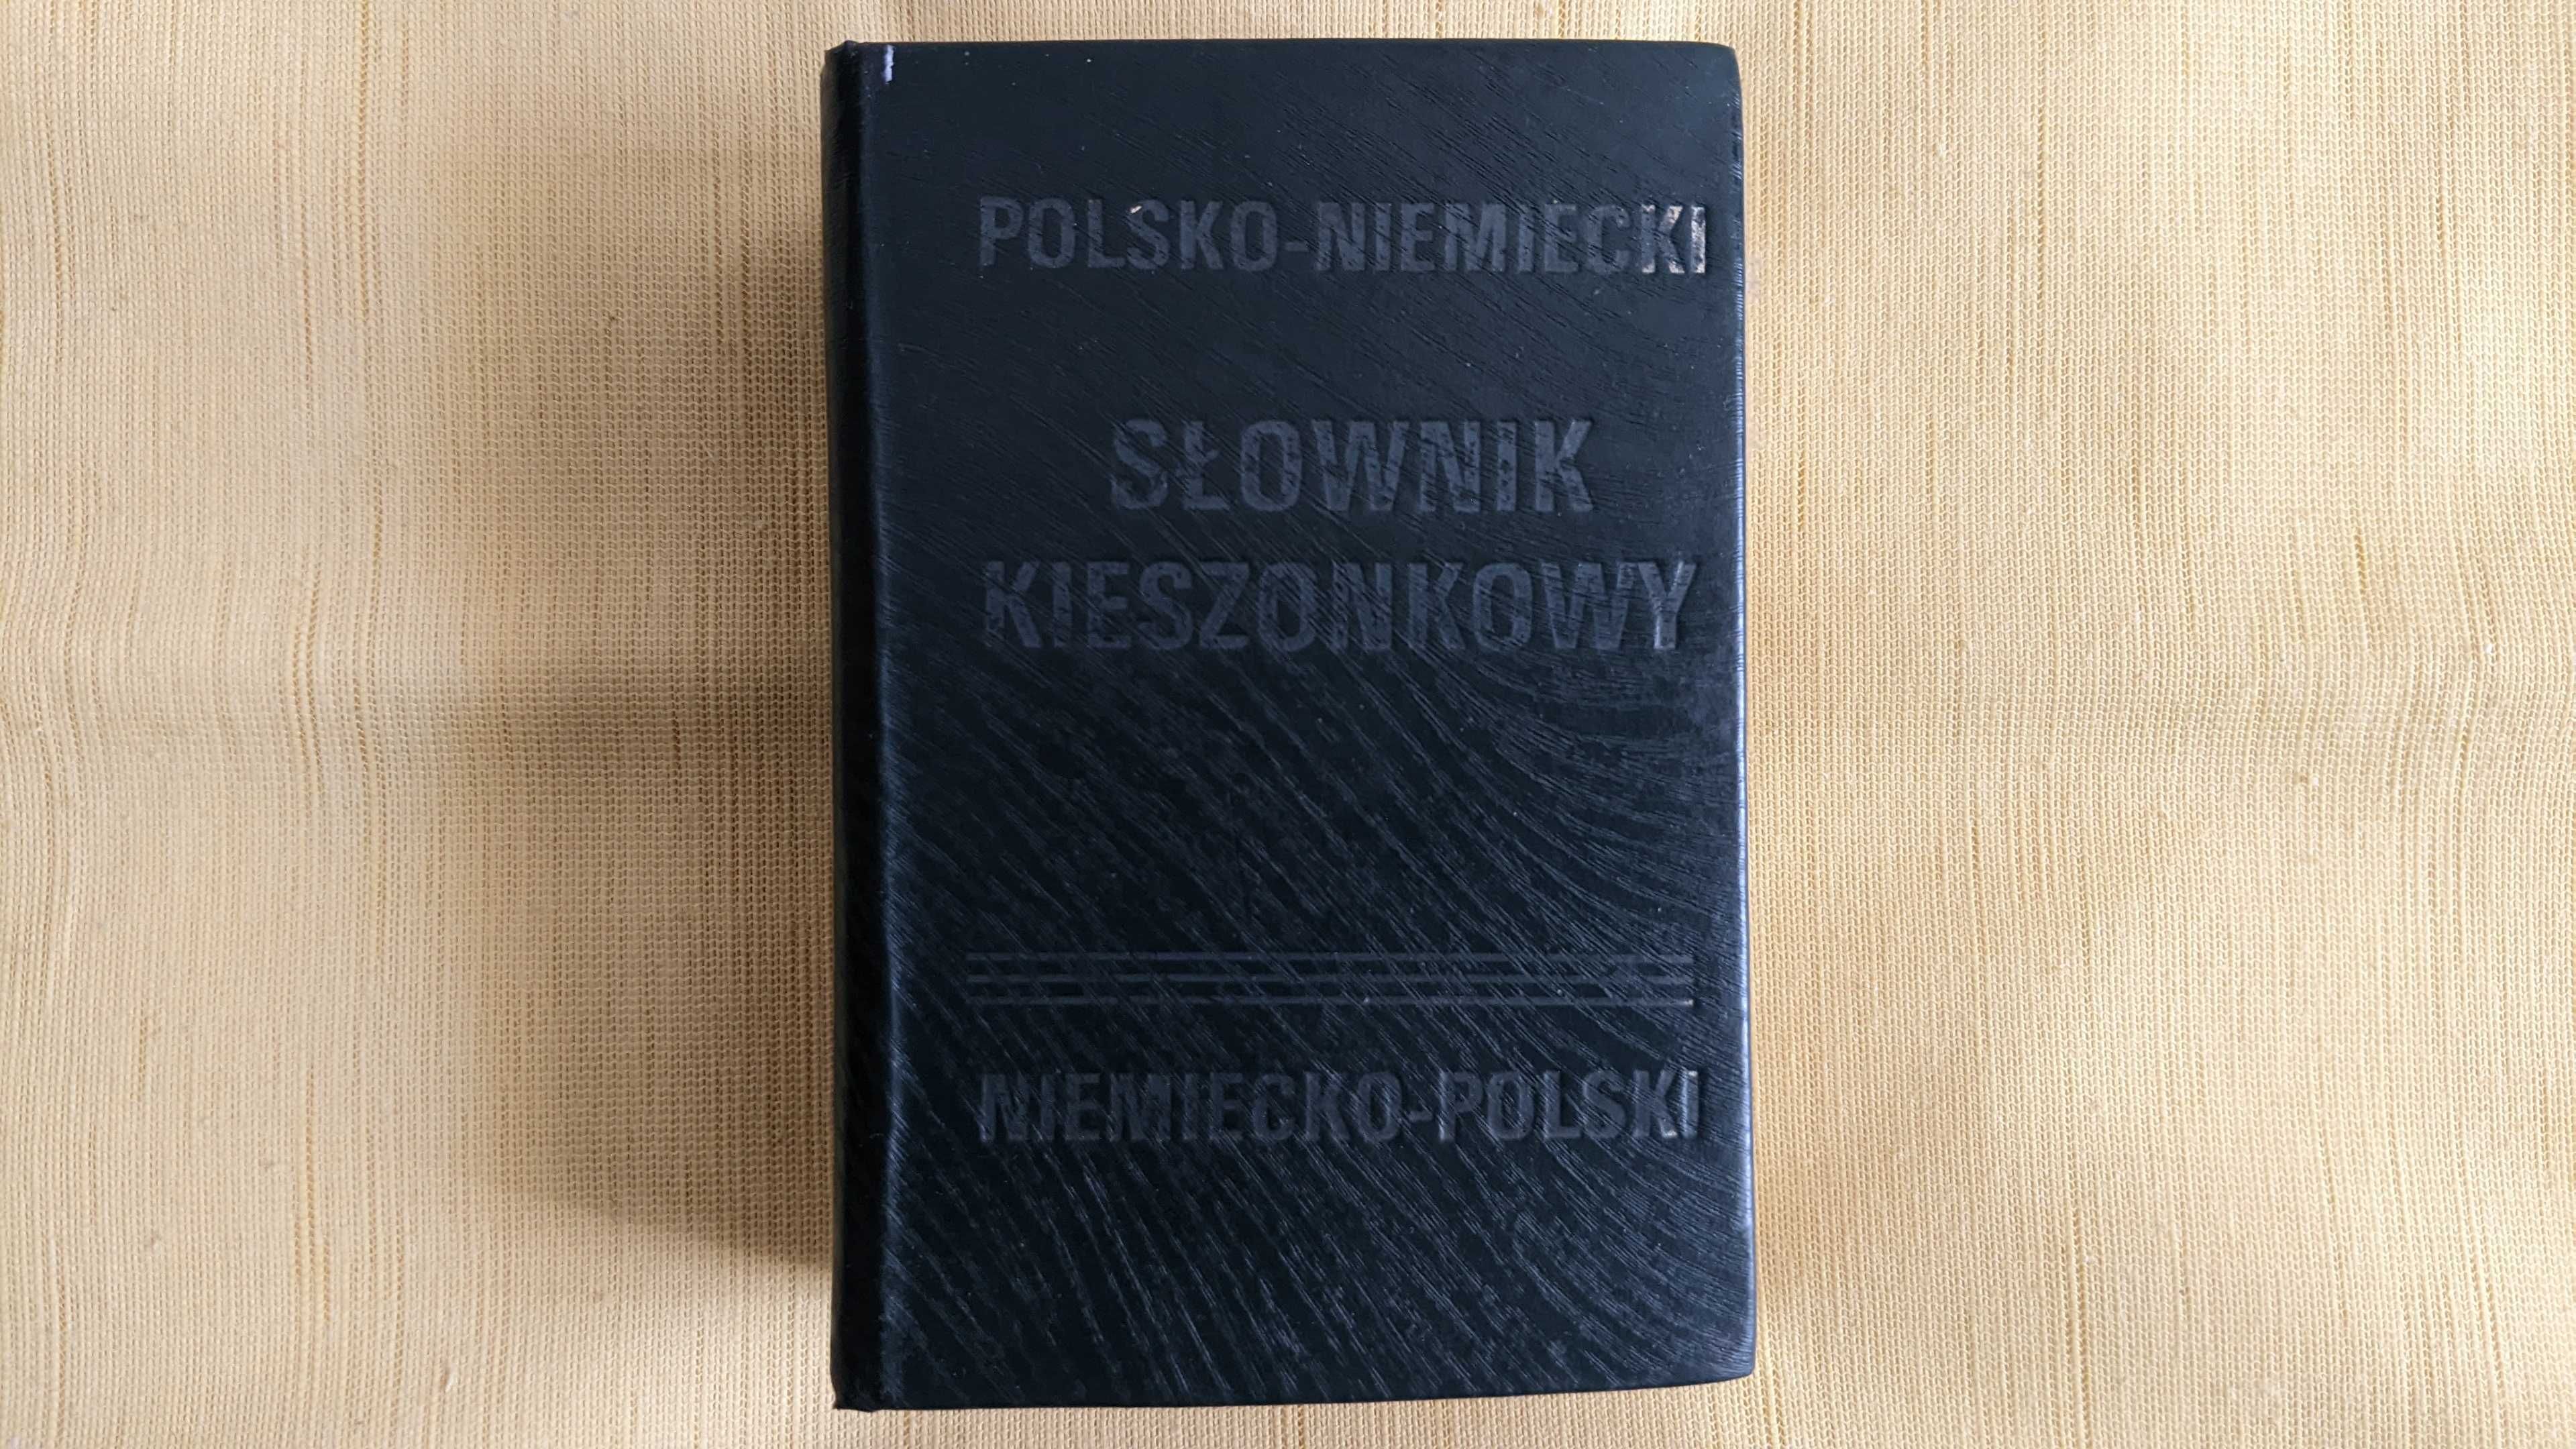 Słownik kieszonkowy polsko-niemiecki niemiecko-polski – W. Jakowczyk